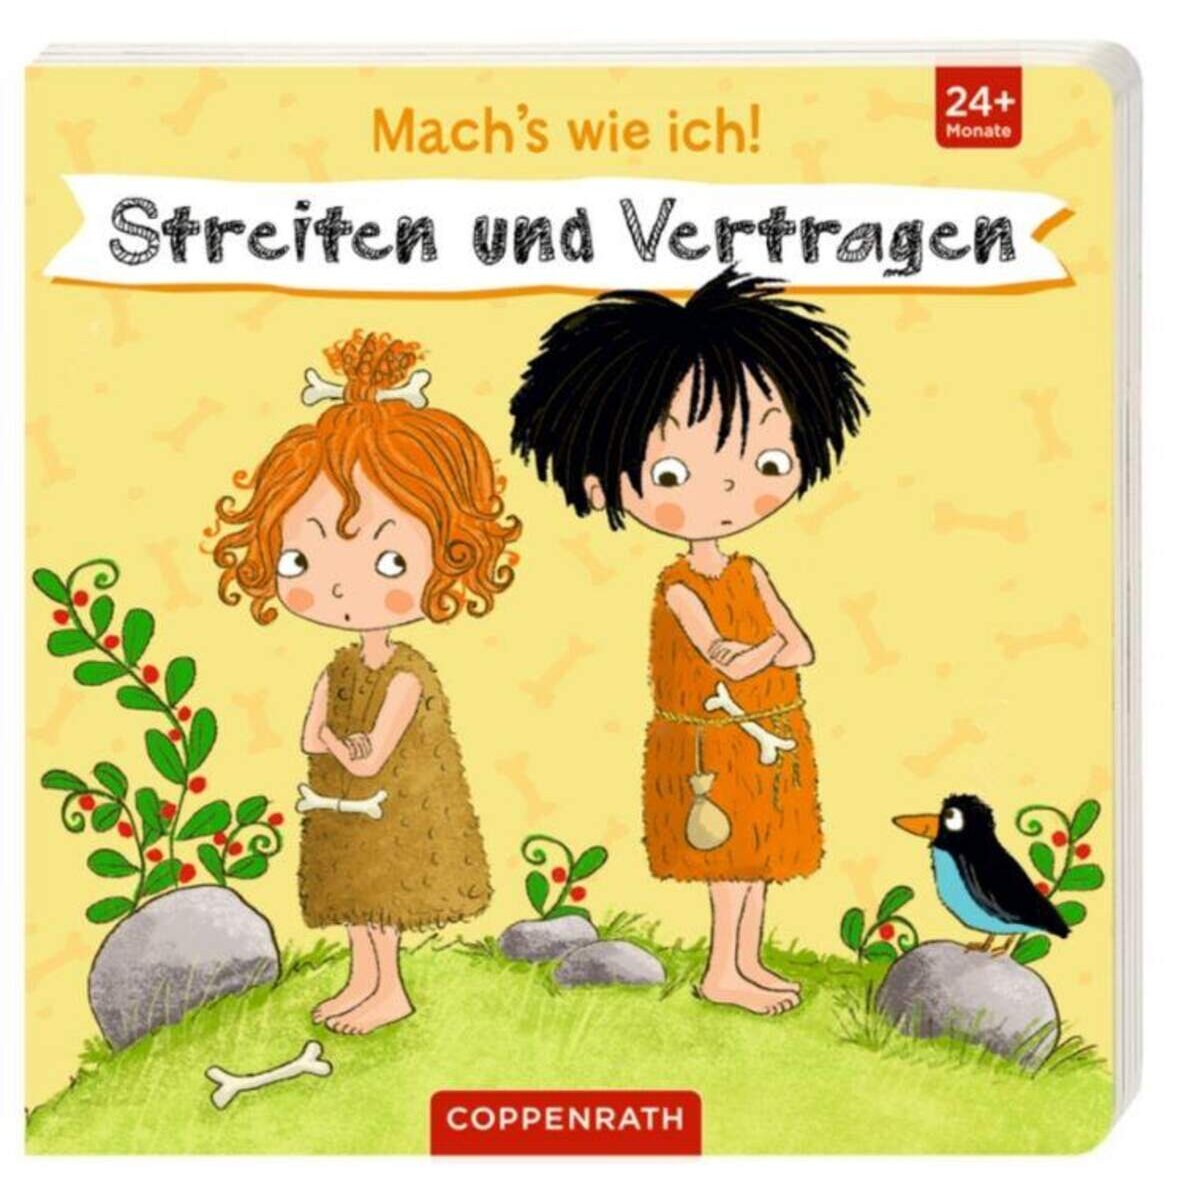 Coppenrath Verlag Mach's wie ich! Streiten und Vertragen